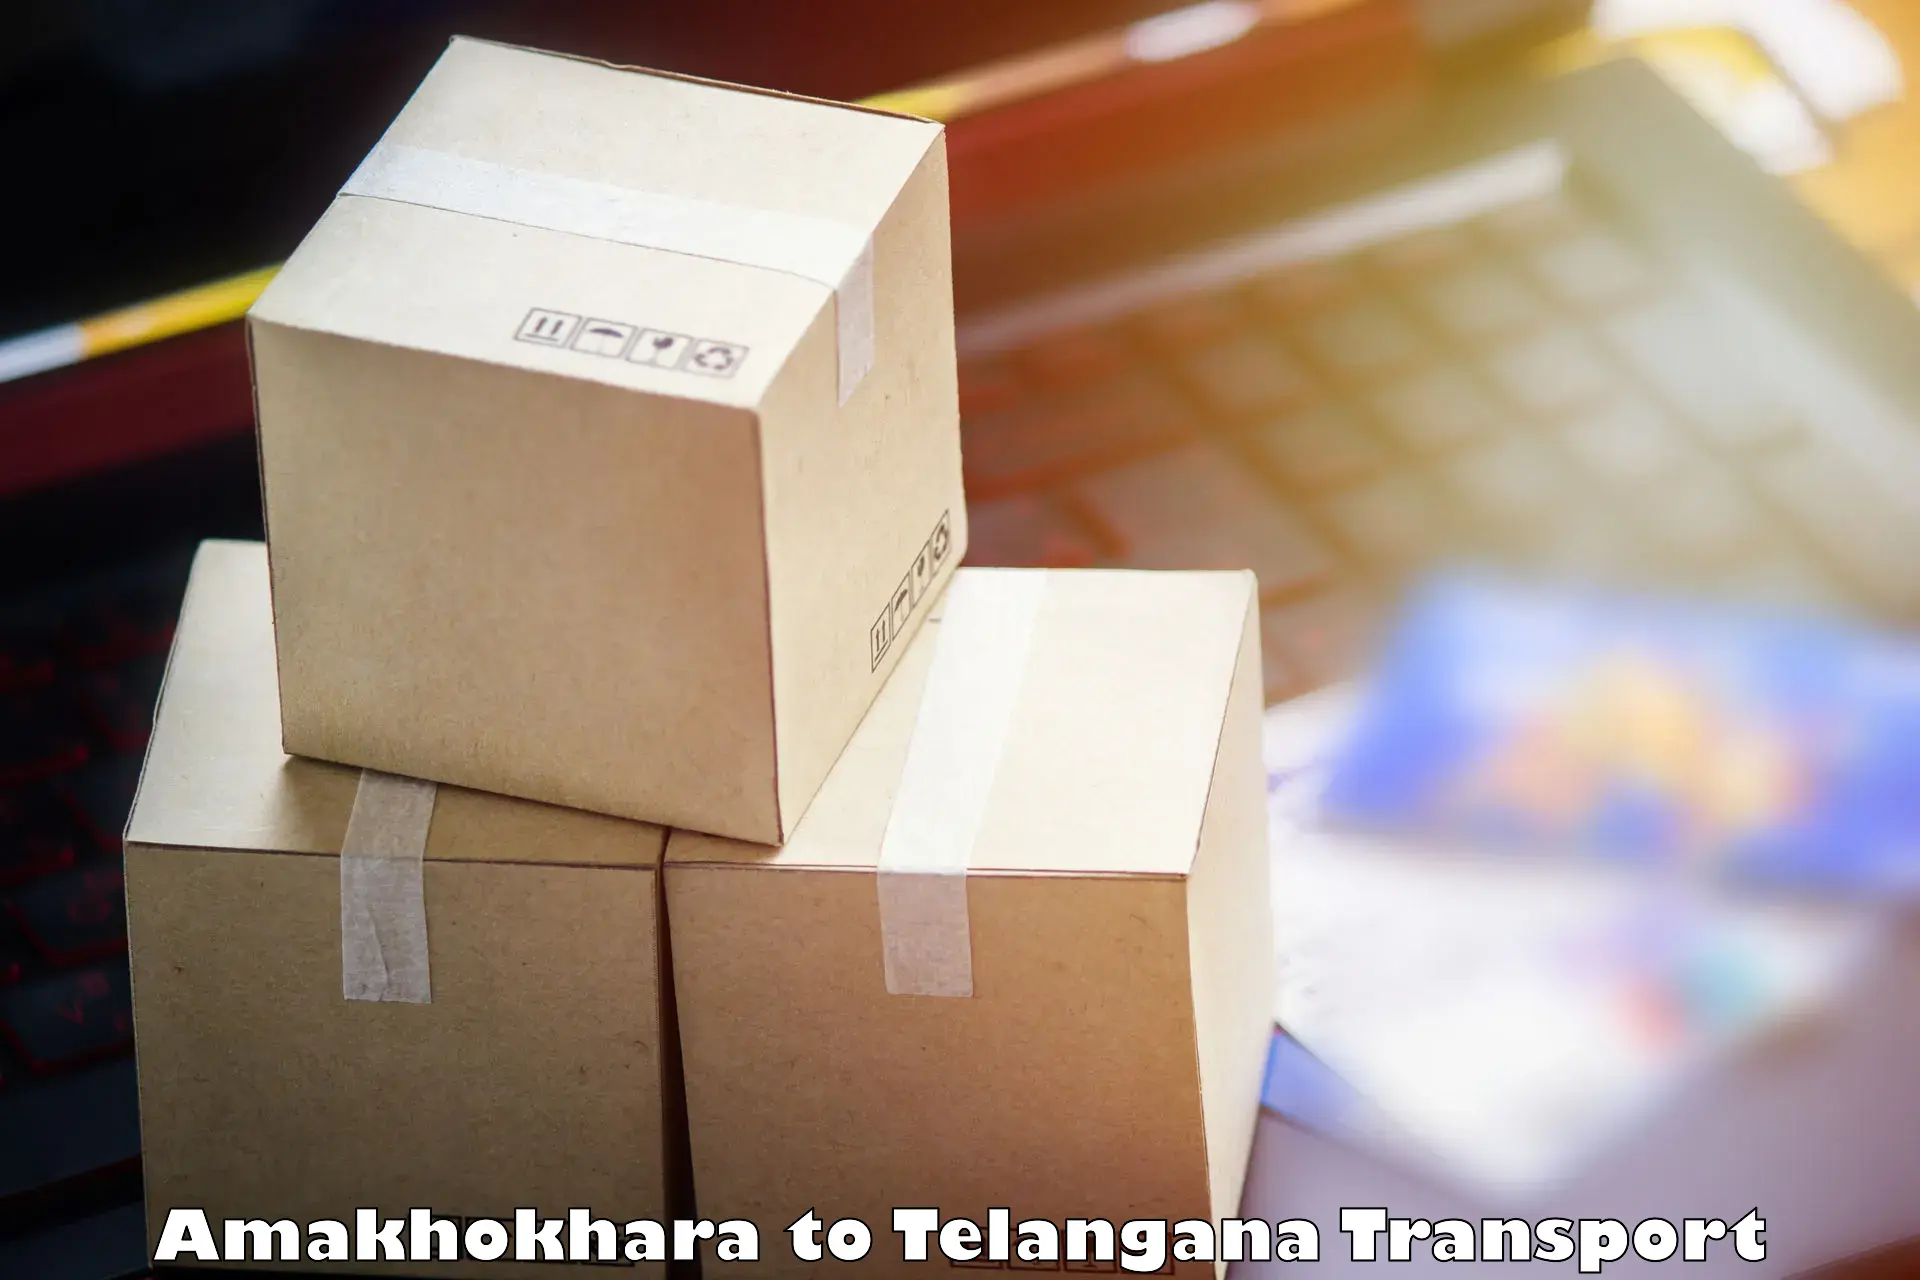 Shipping services Amakhokhara to Professor Jayashankar Telangana State Agricultural University Hyderabad